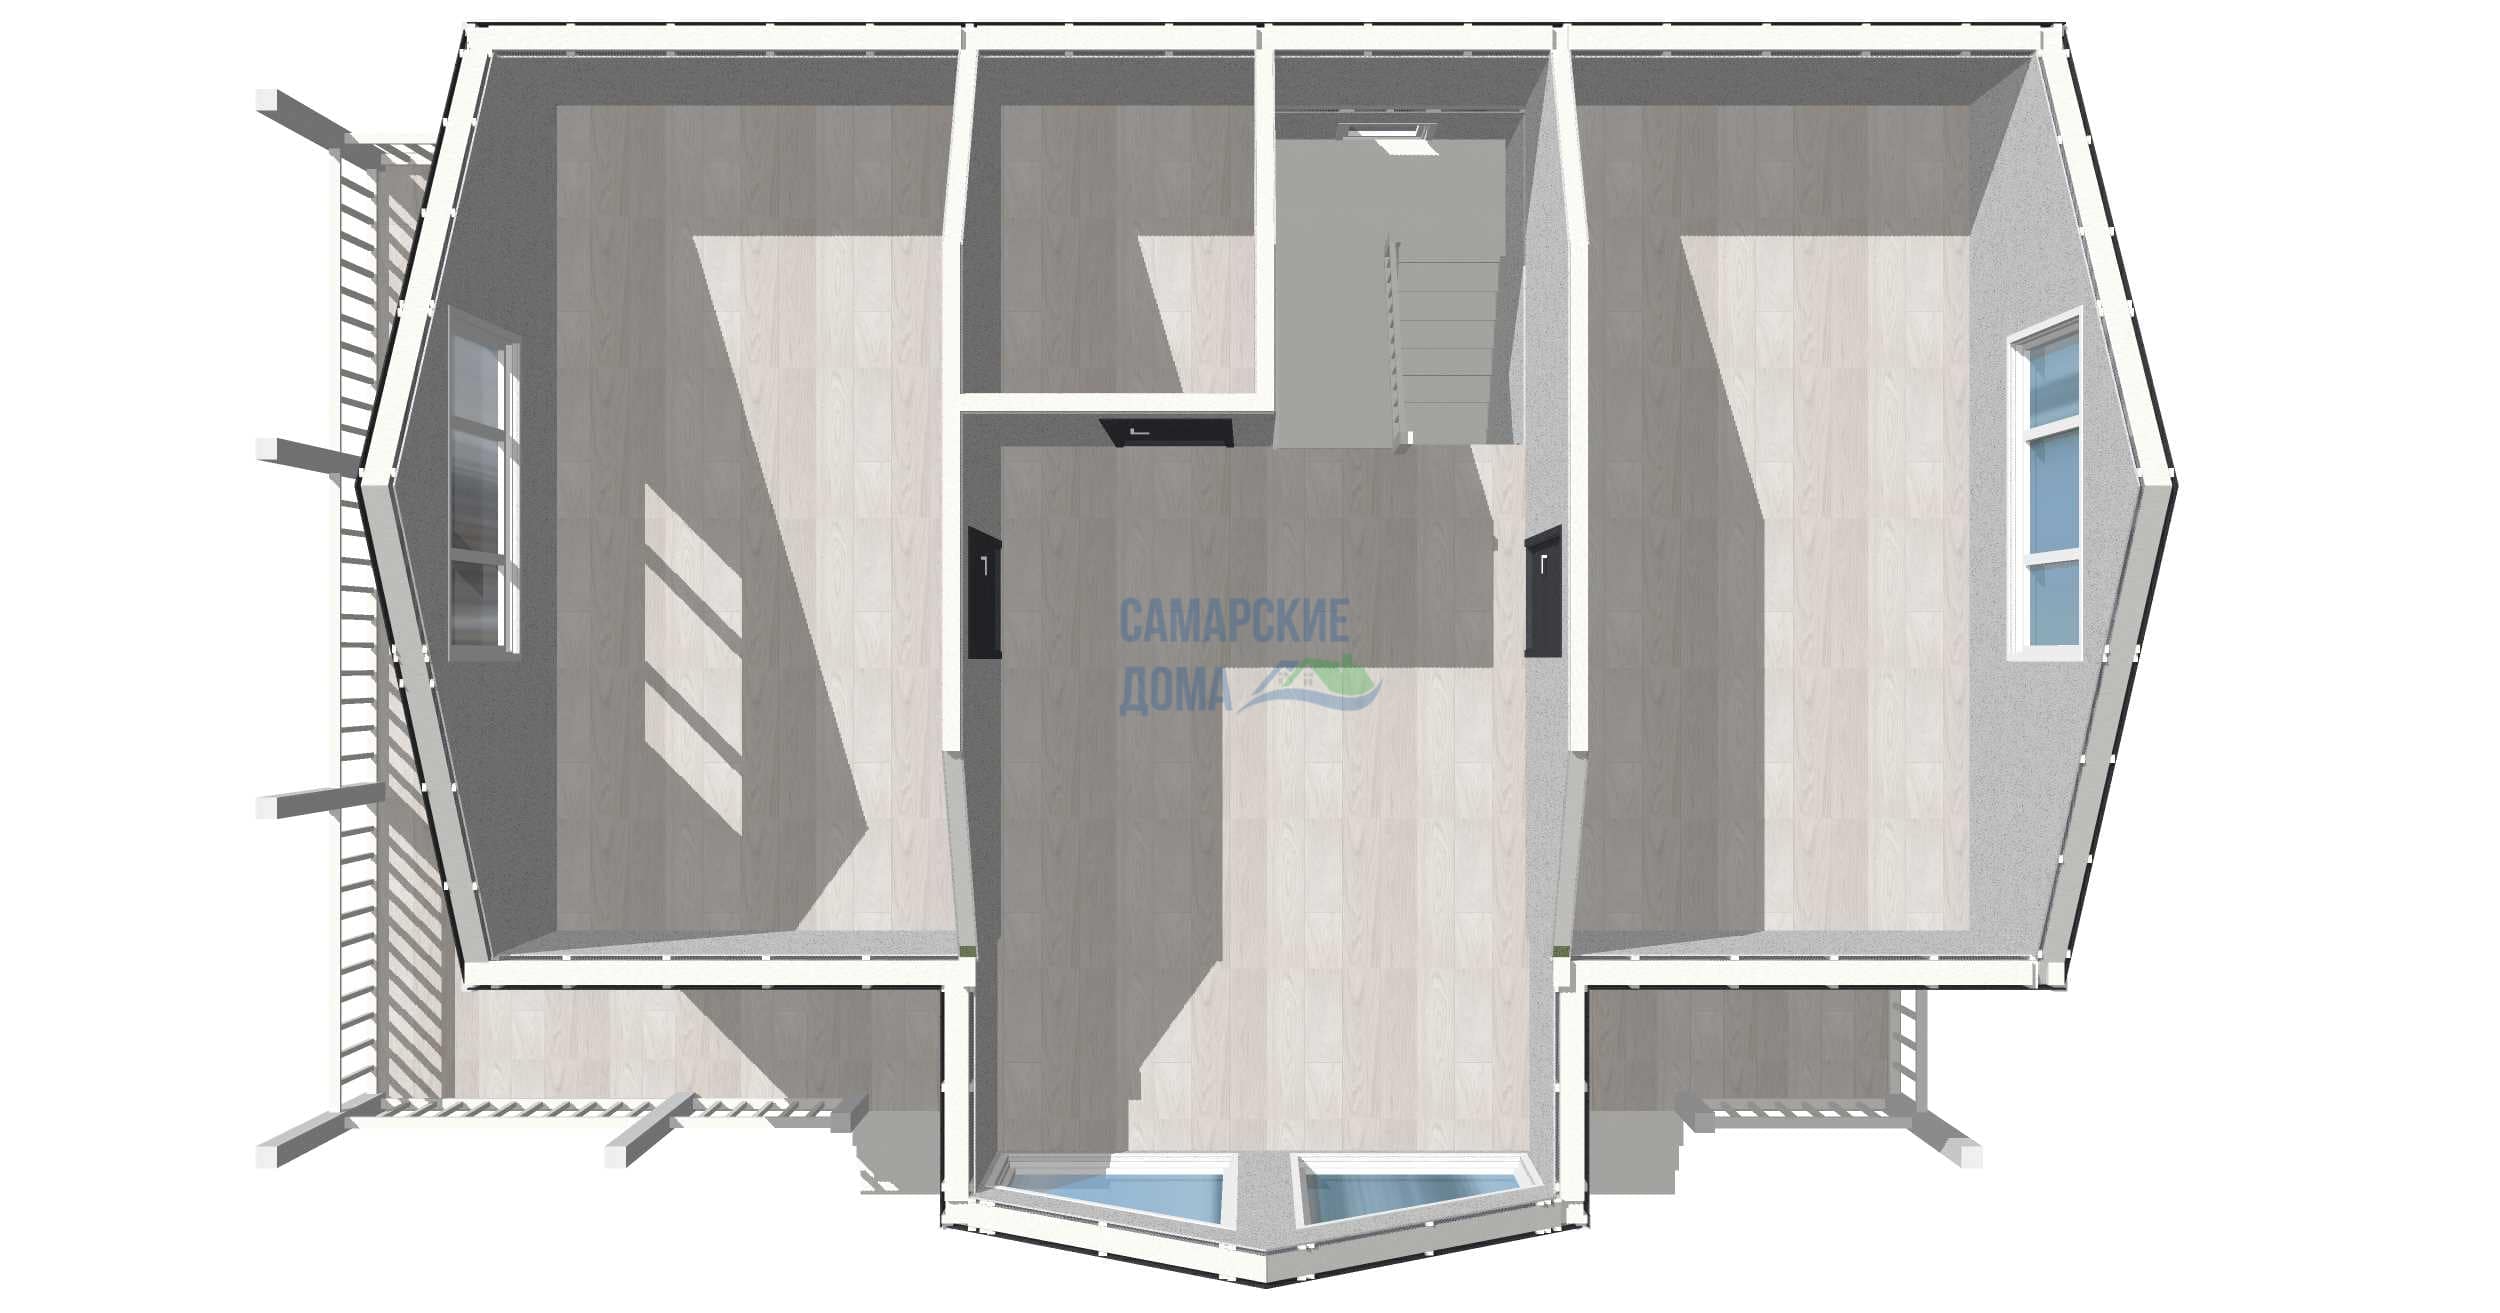 Планировка дома СД-152 2 этаж 3D